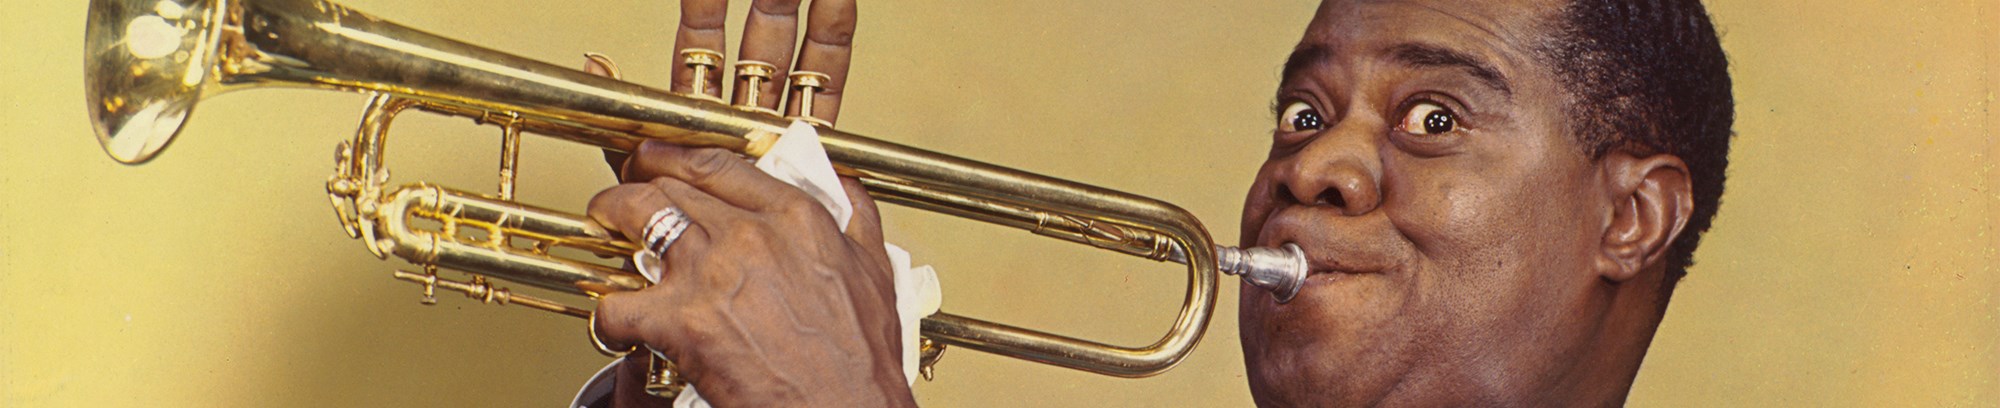 Hør den musikalske fortælling om Louis Armstrong - fra fattig dreng til verdensstjerne